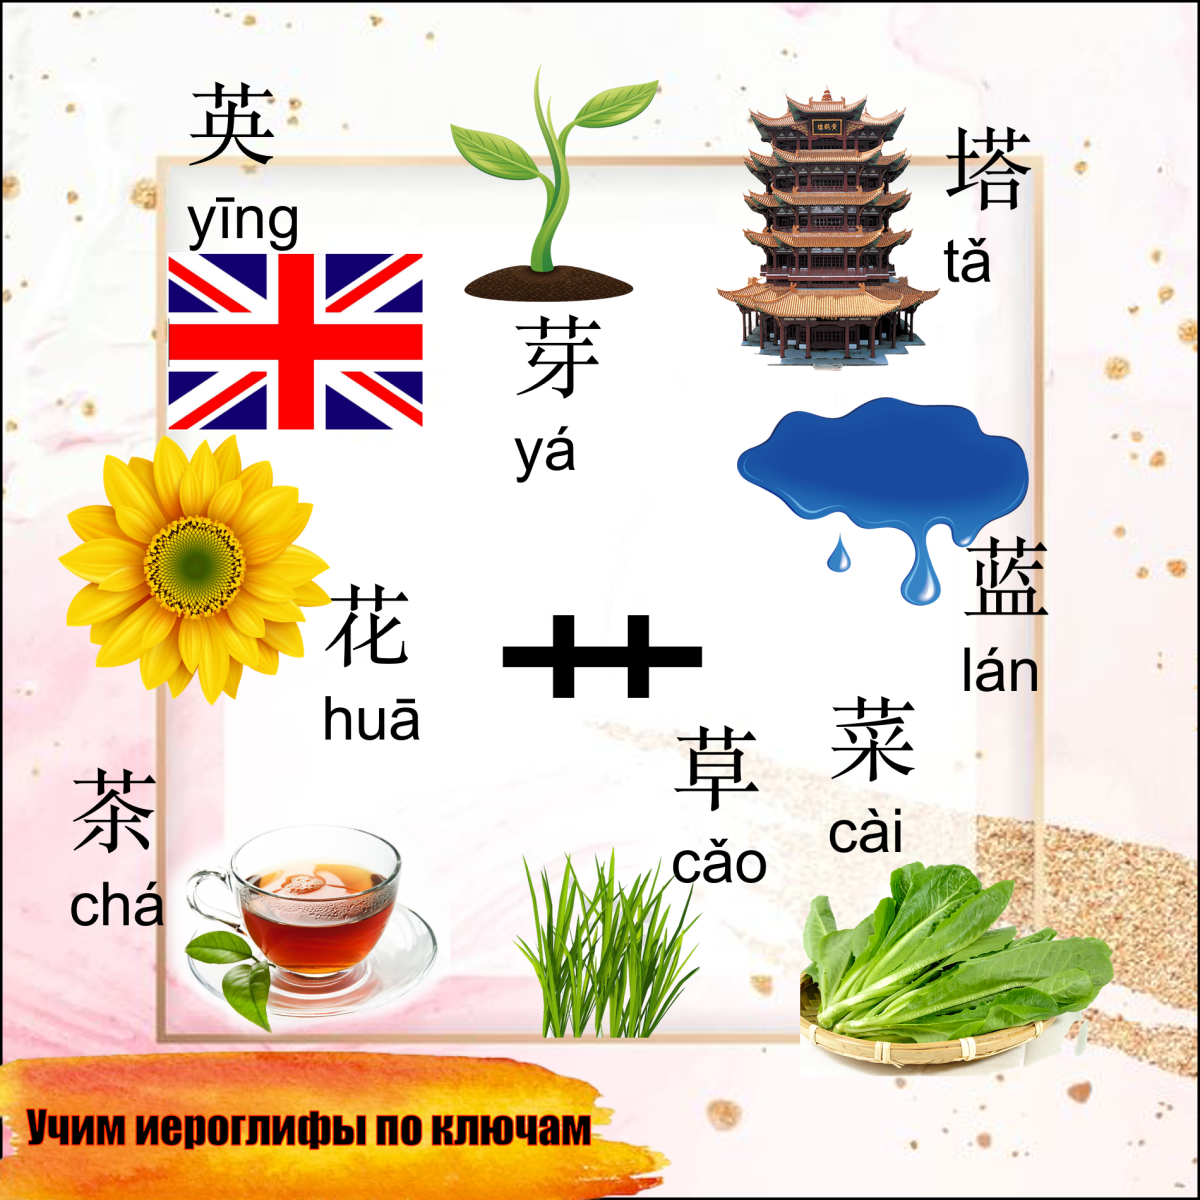 0 10 на китайском. Китайский иероглиф трава. Трава на китайском языке. Ключ трава китайский. Чай на китайском языке иероглиф.